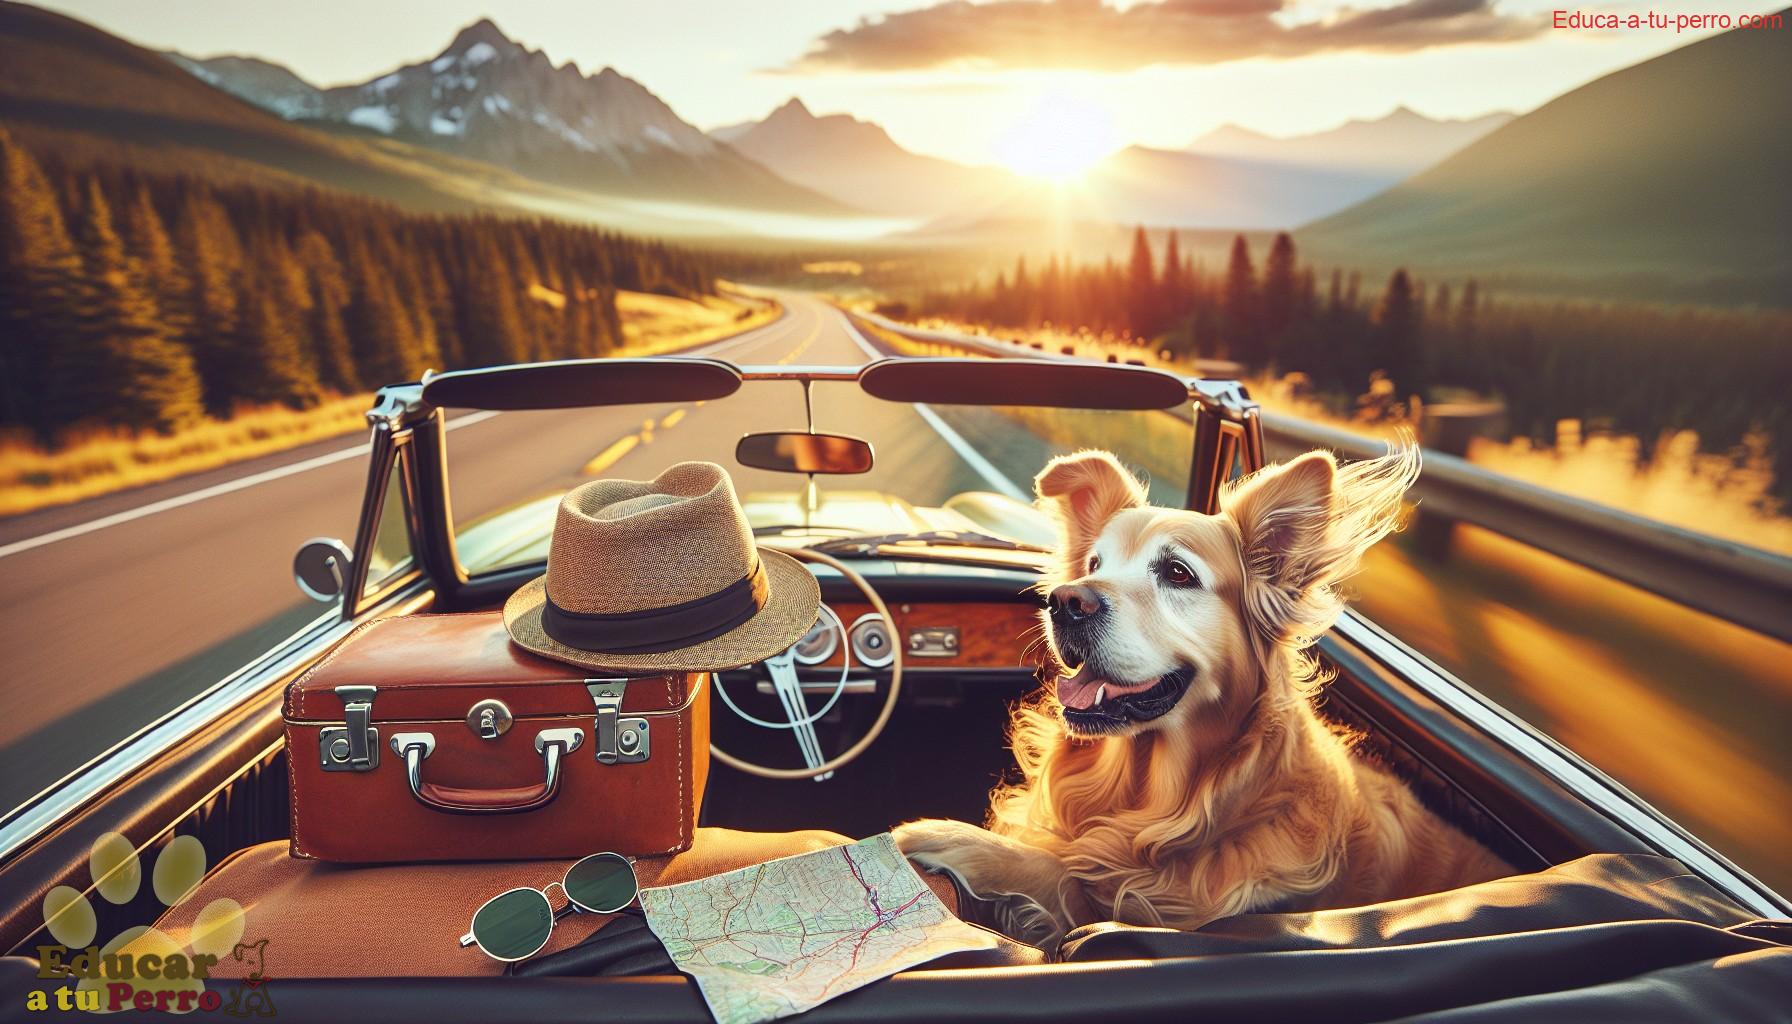 viaja con tu perro - Viaja con tu perro